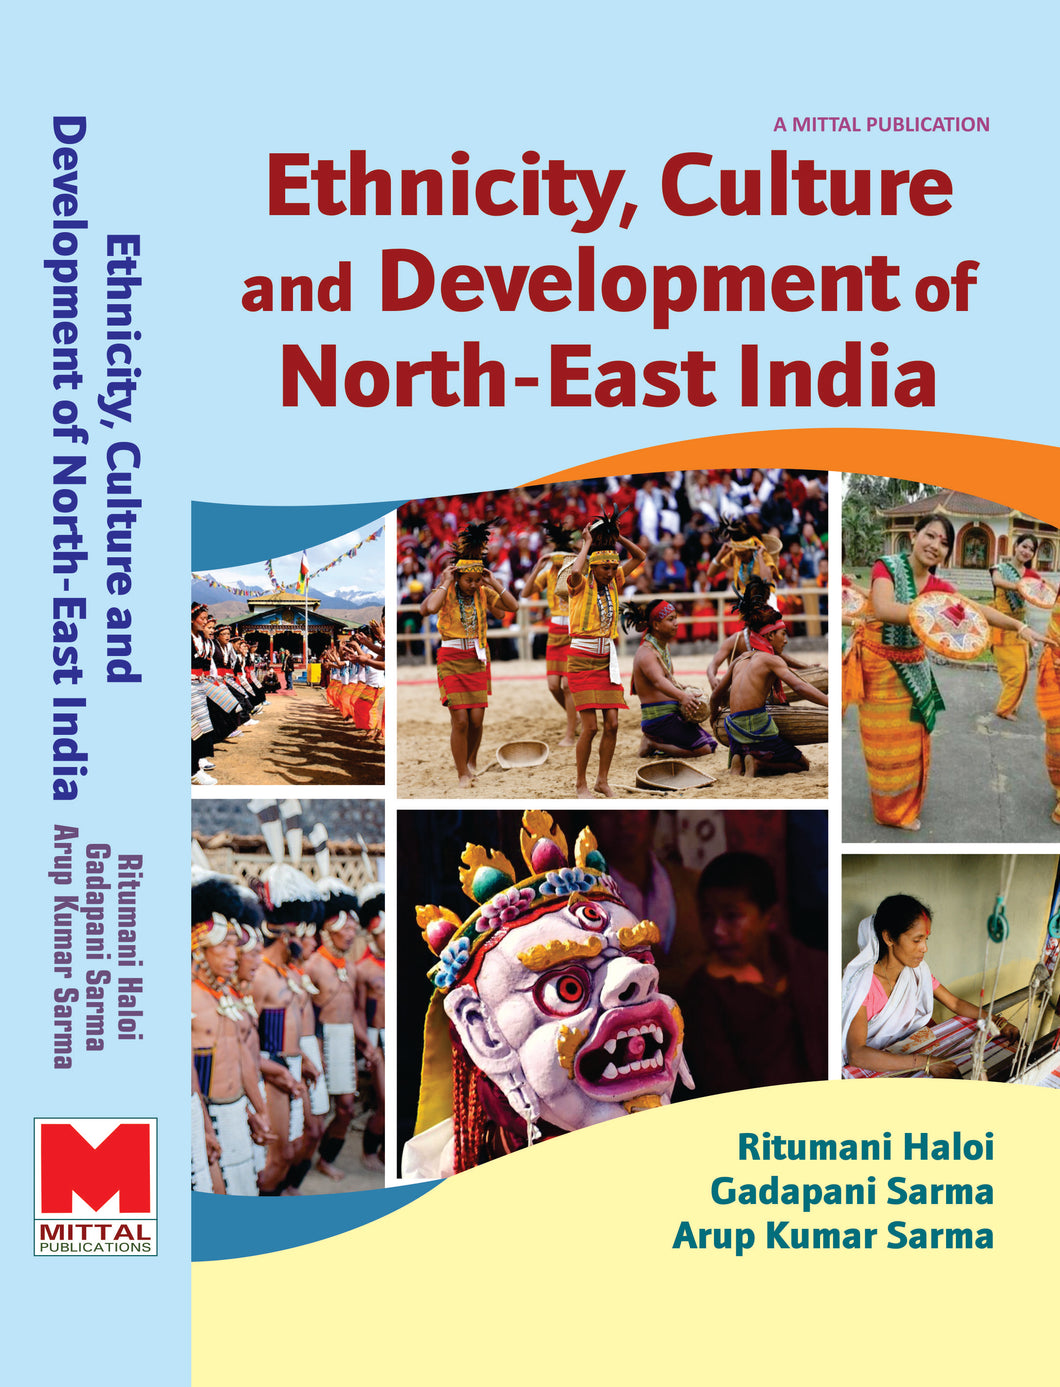 Ethnicity, Culture and Development of North-East India by Ritumoni Haloi, Gadapani Sarma & Arup Kumar Sarma